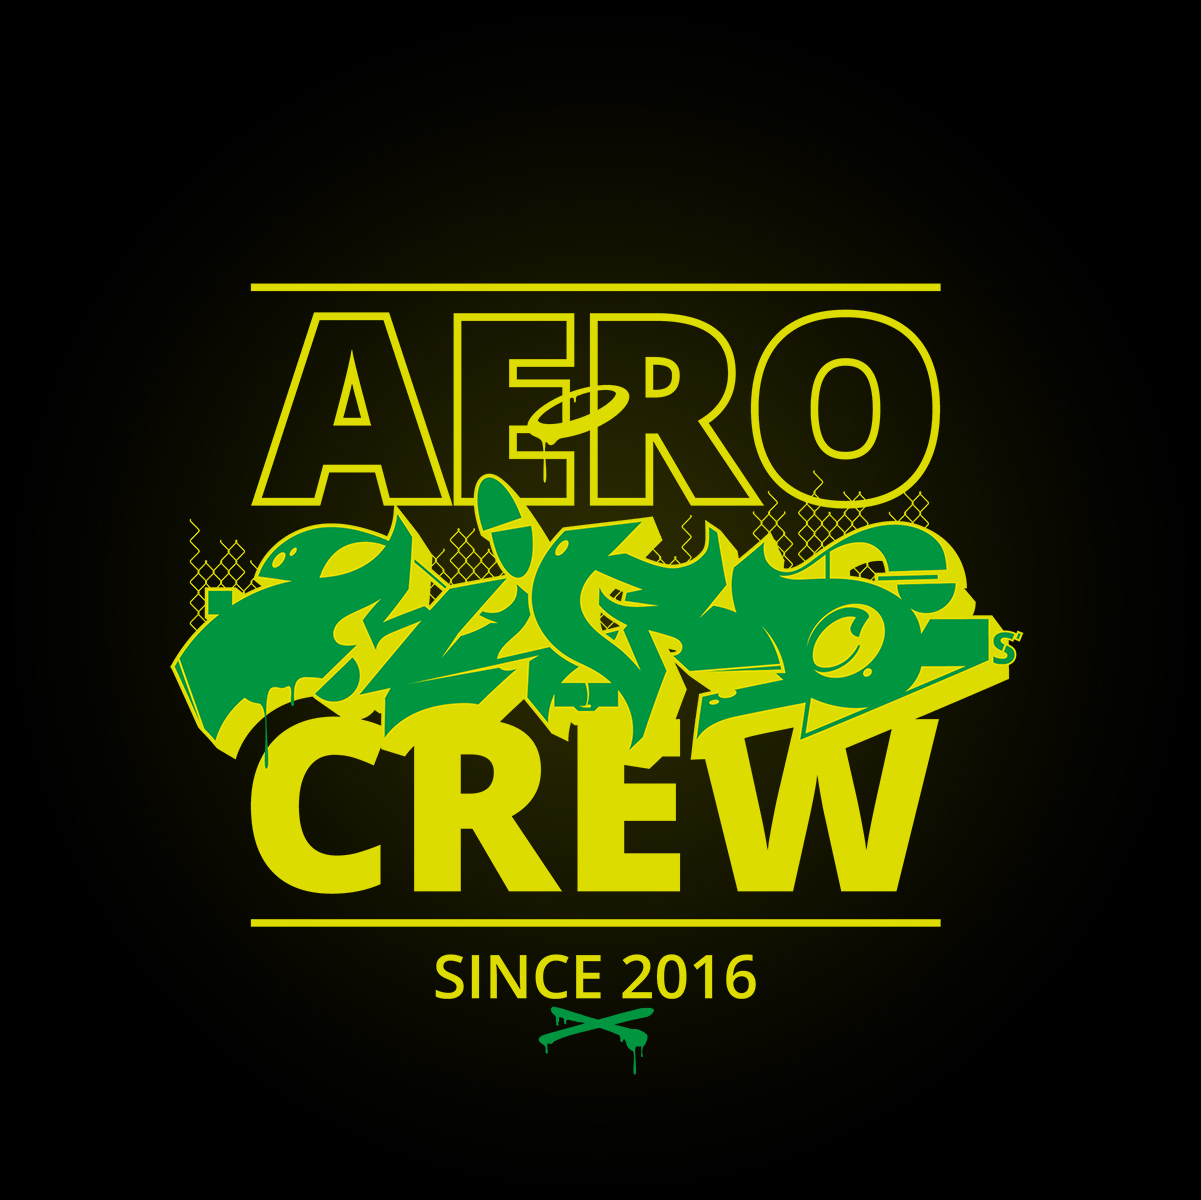 AeroMigosCrew